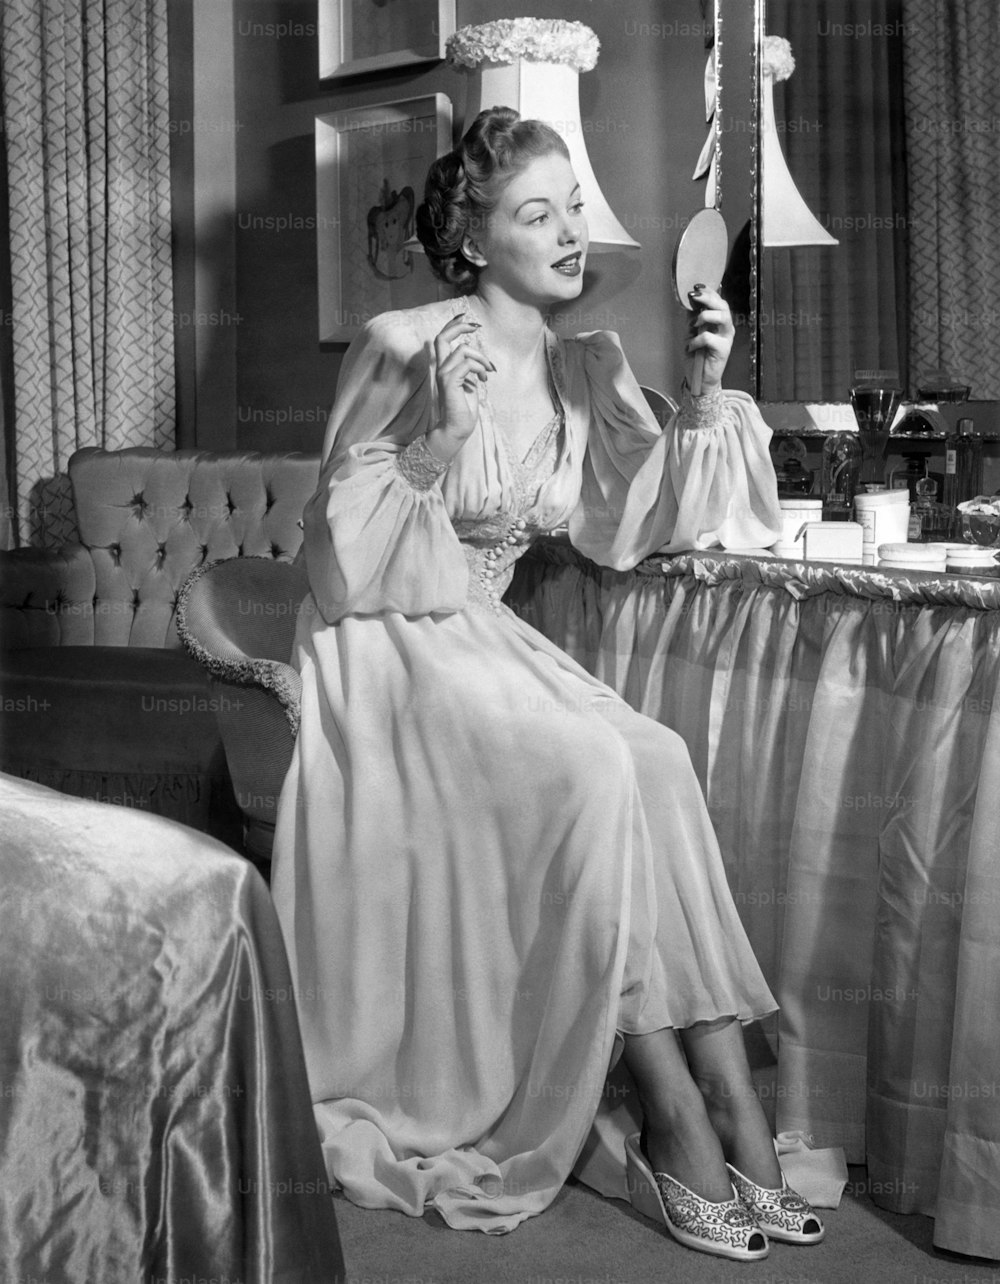 ESTADOS UNIDOS - Alrededor de la década de 1950: Una mujer en camisón mirándose en el espejo.